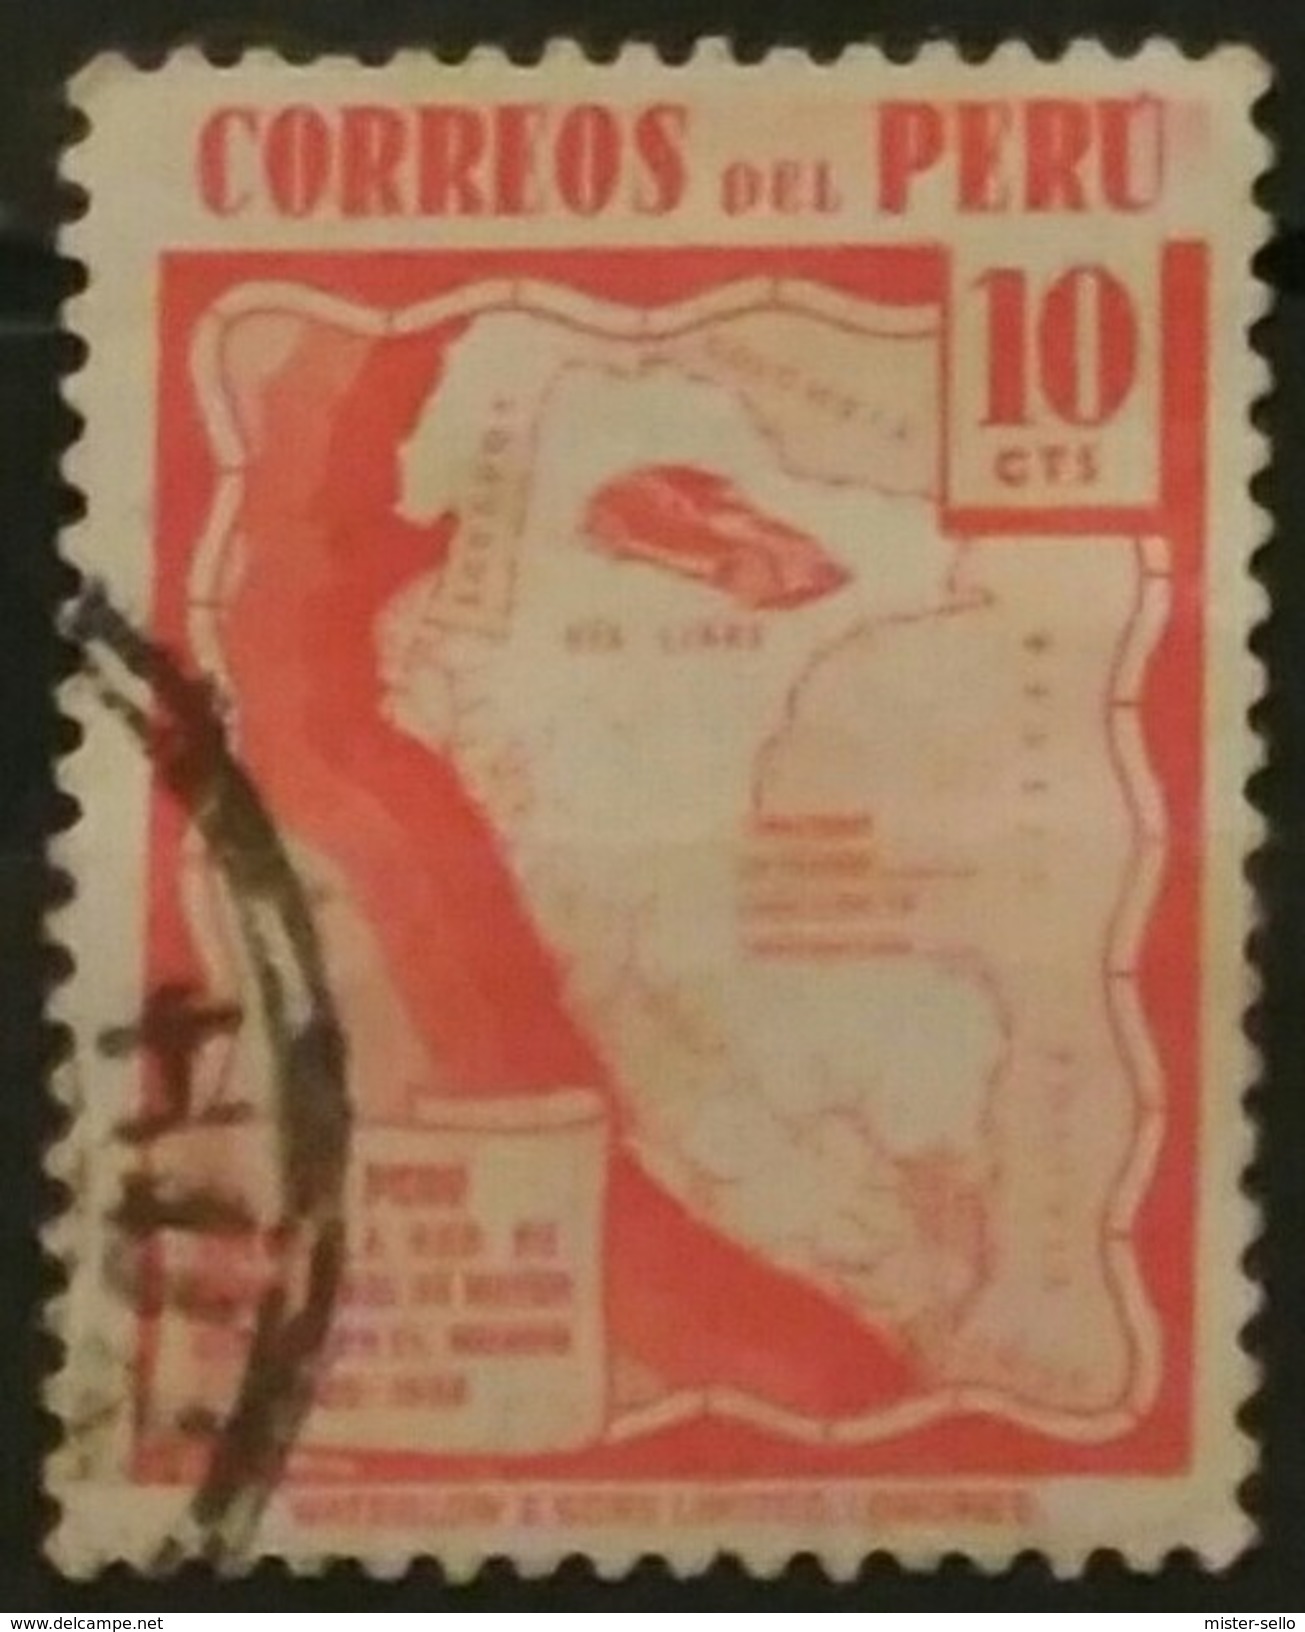 PERÚ 1938 Serie De Uso Corriente. USADOS - USED. - Perù